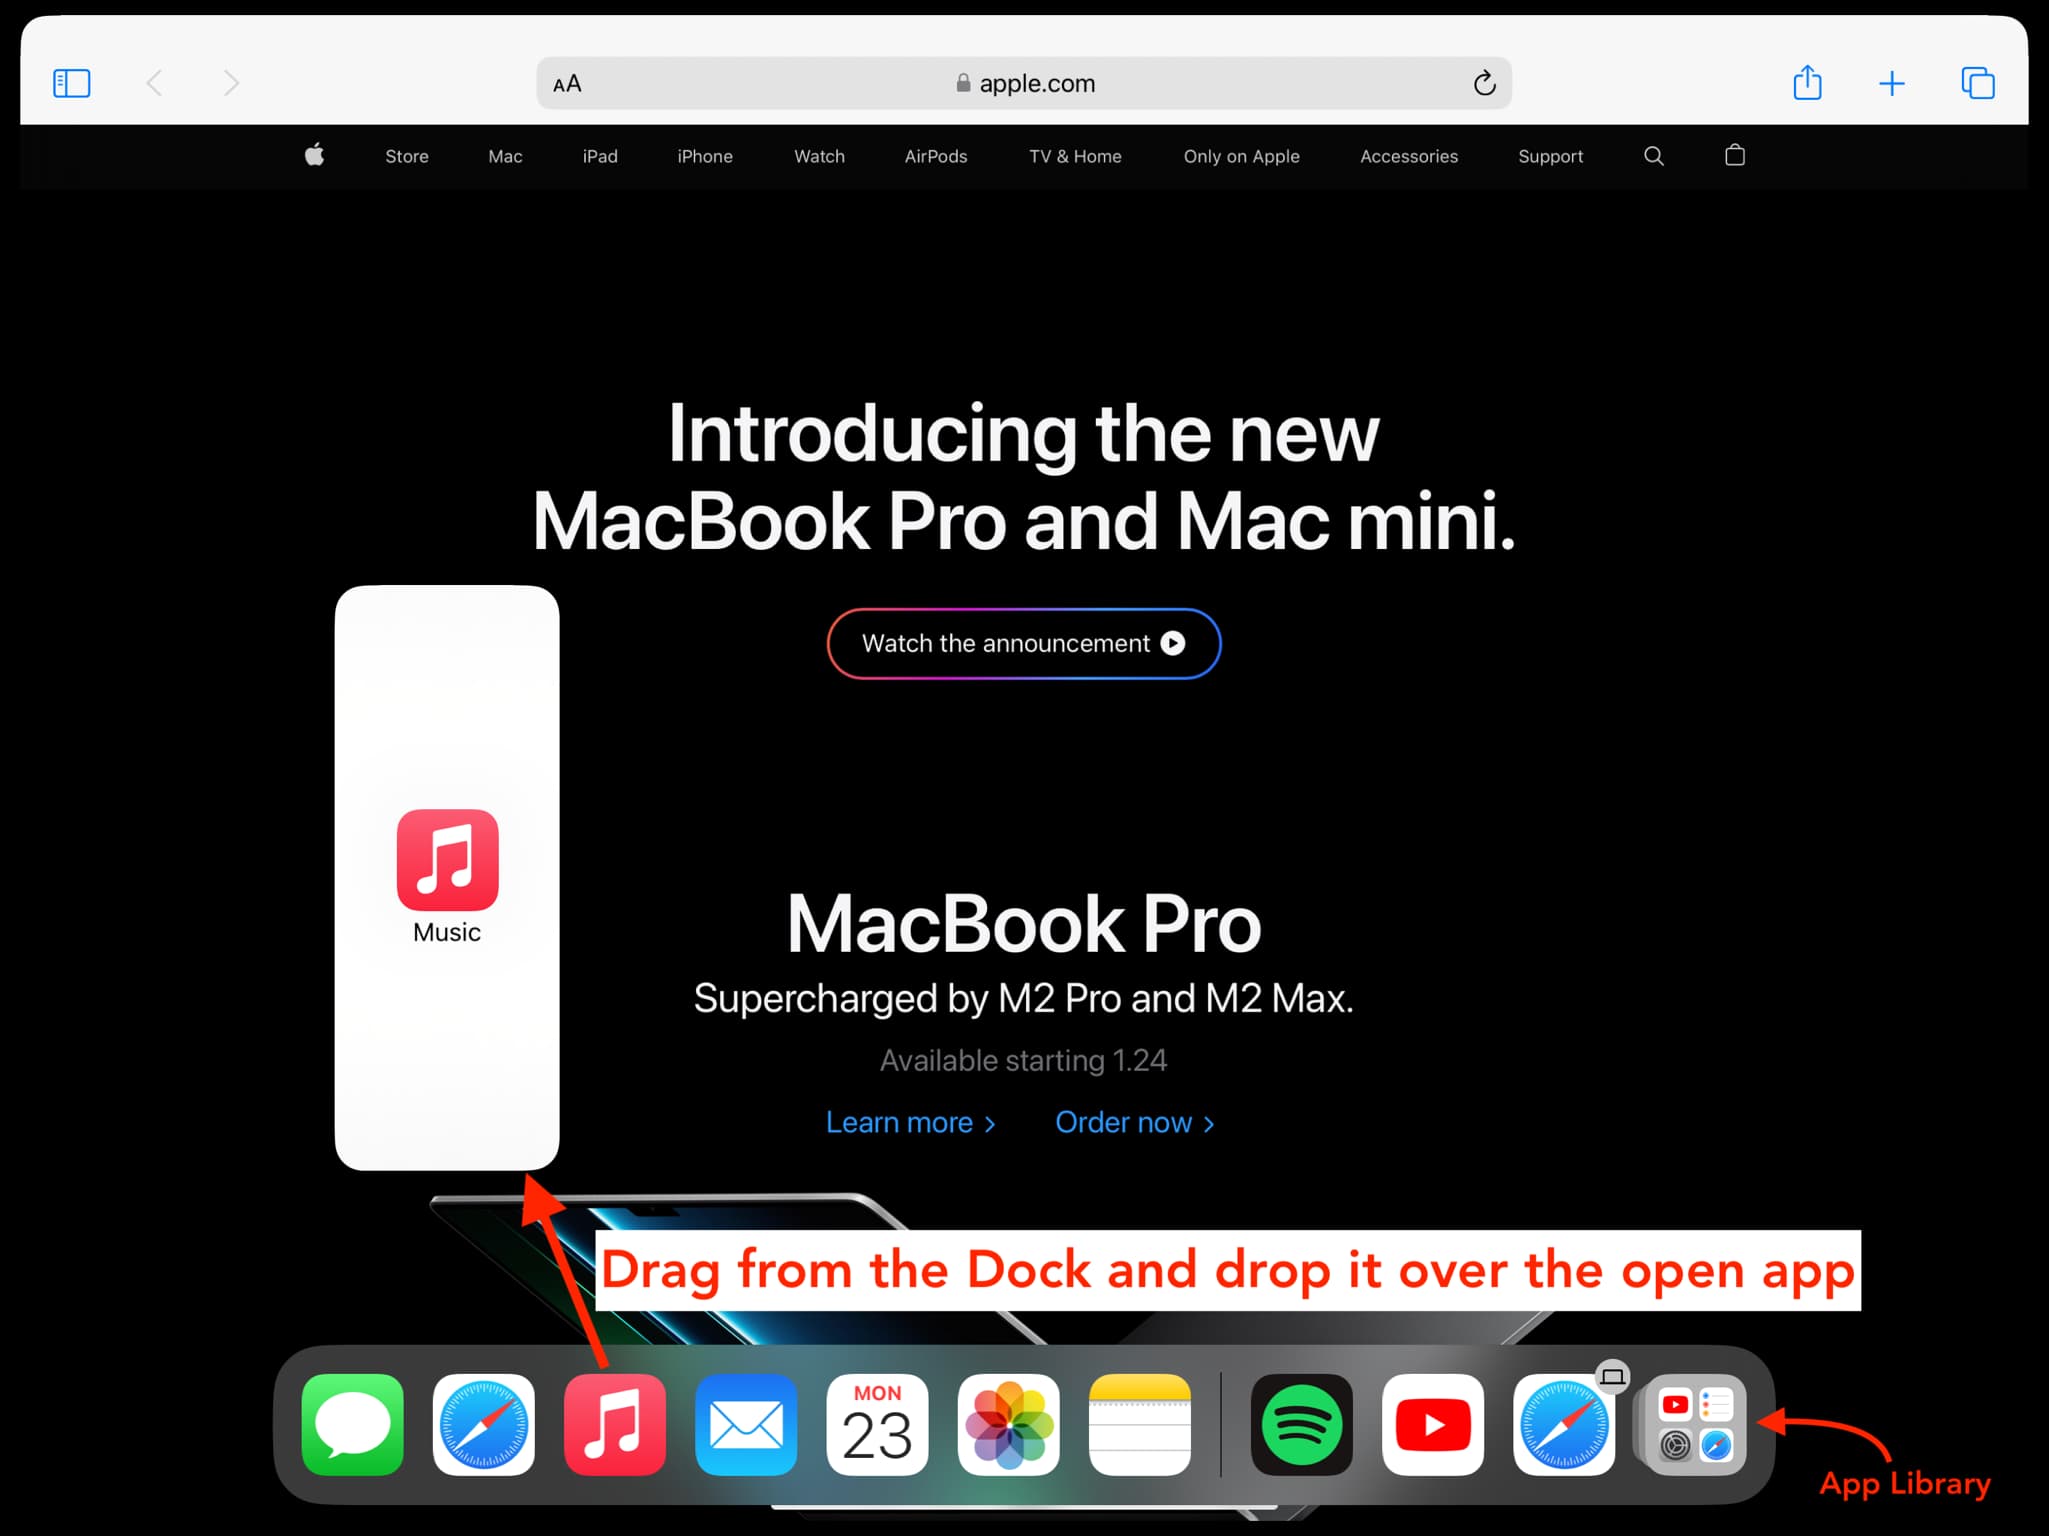 Faites glisser l'application depuis l'iPad Dock pour l'ouvrir dans Slide Over